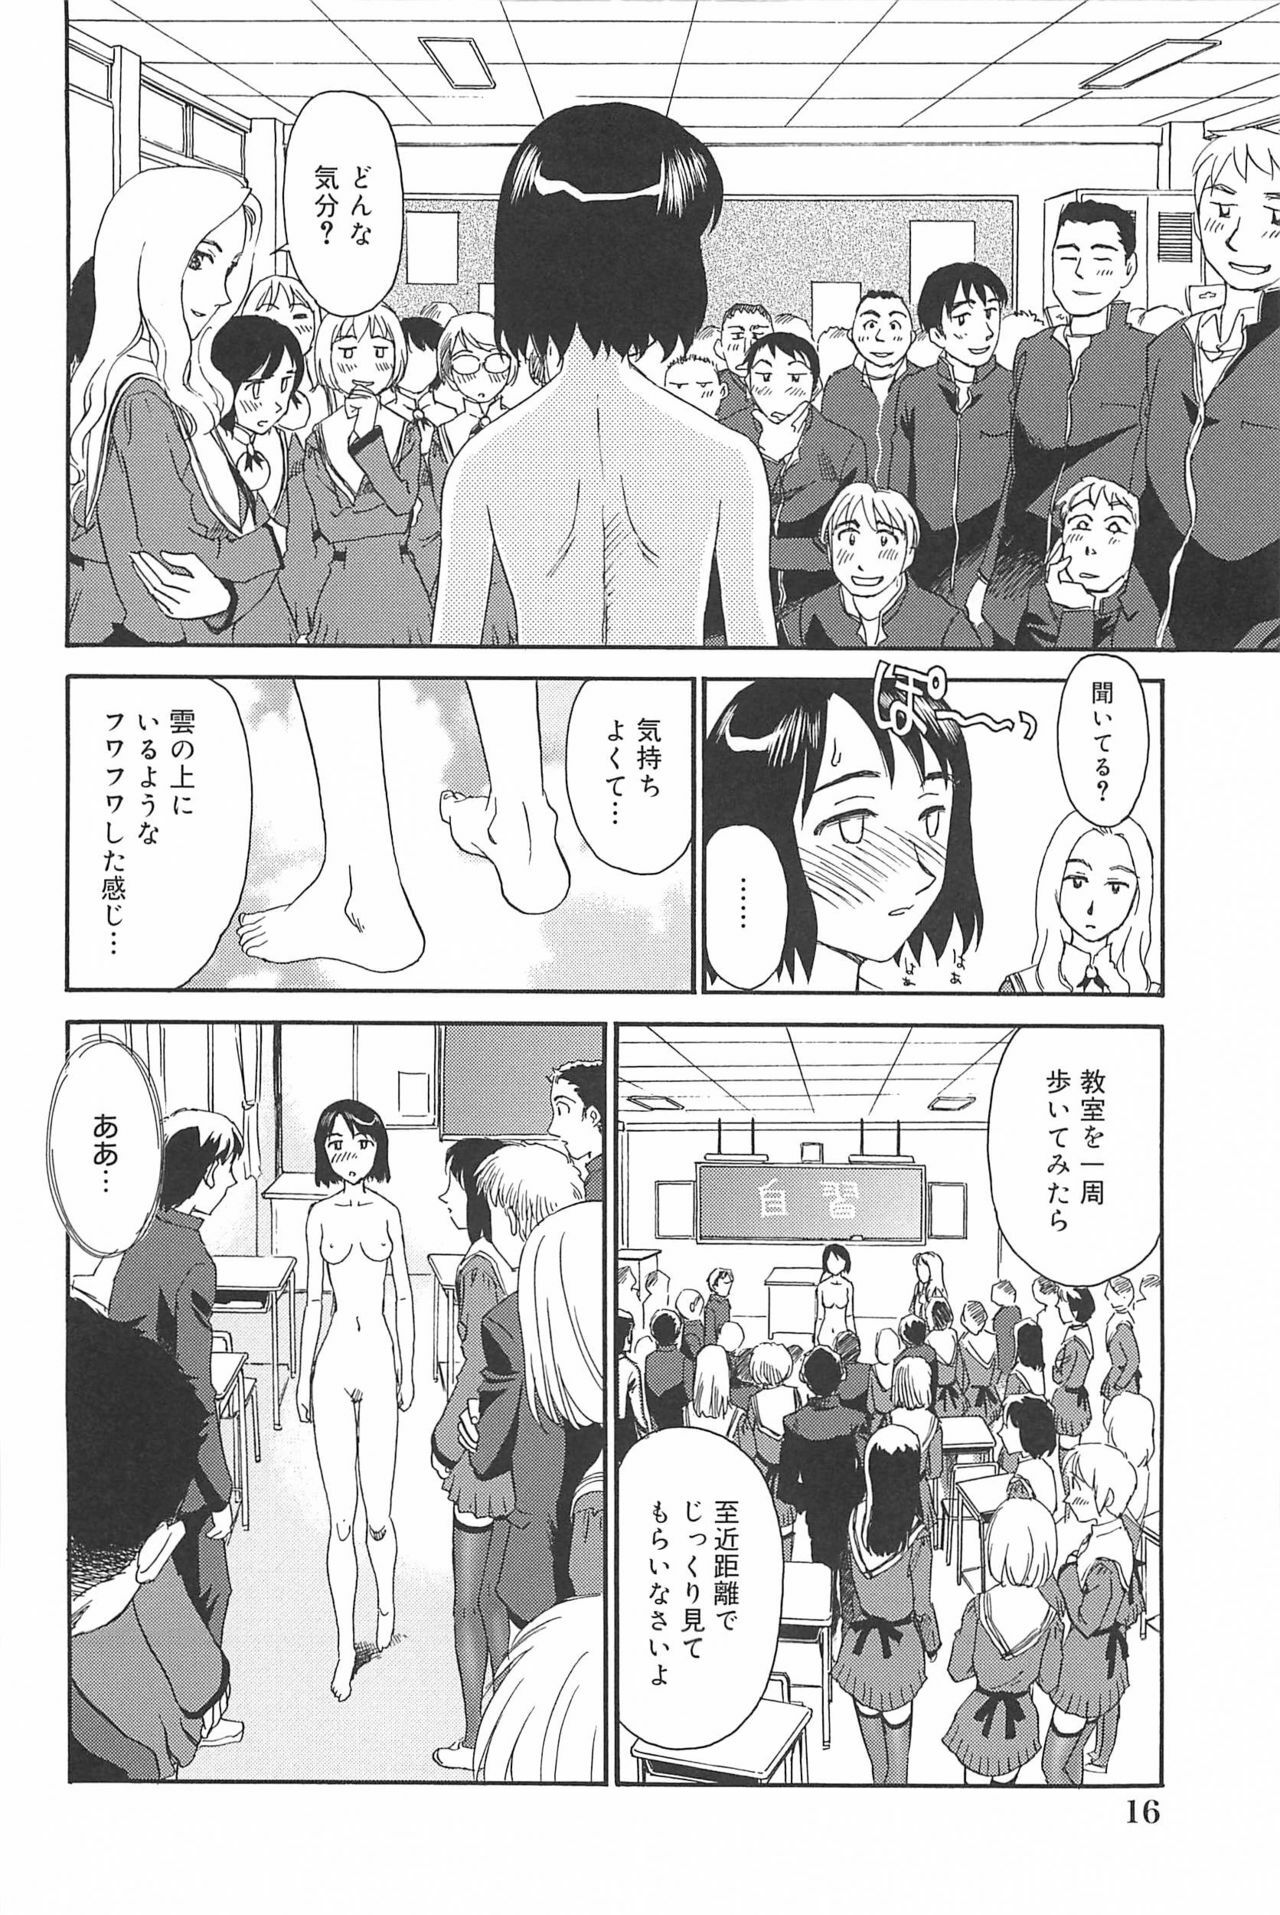 [Suehirogari] Kumo no Michi page 17 full